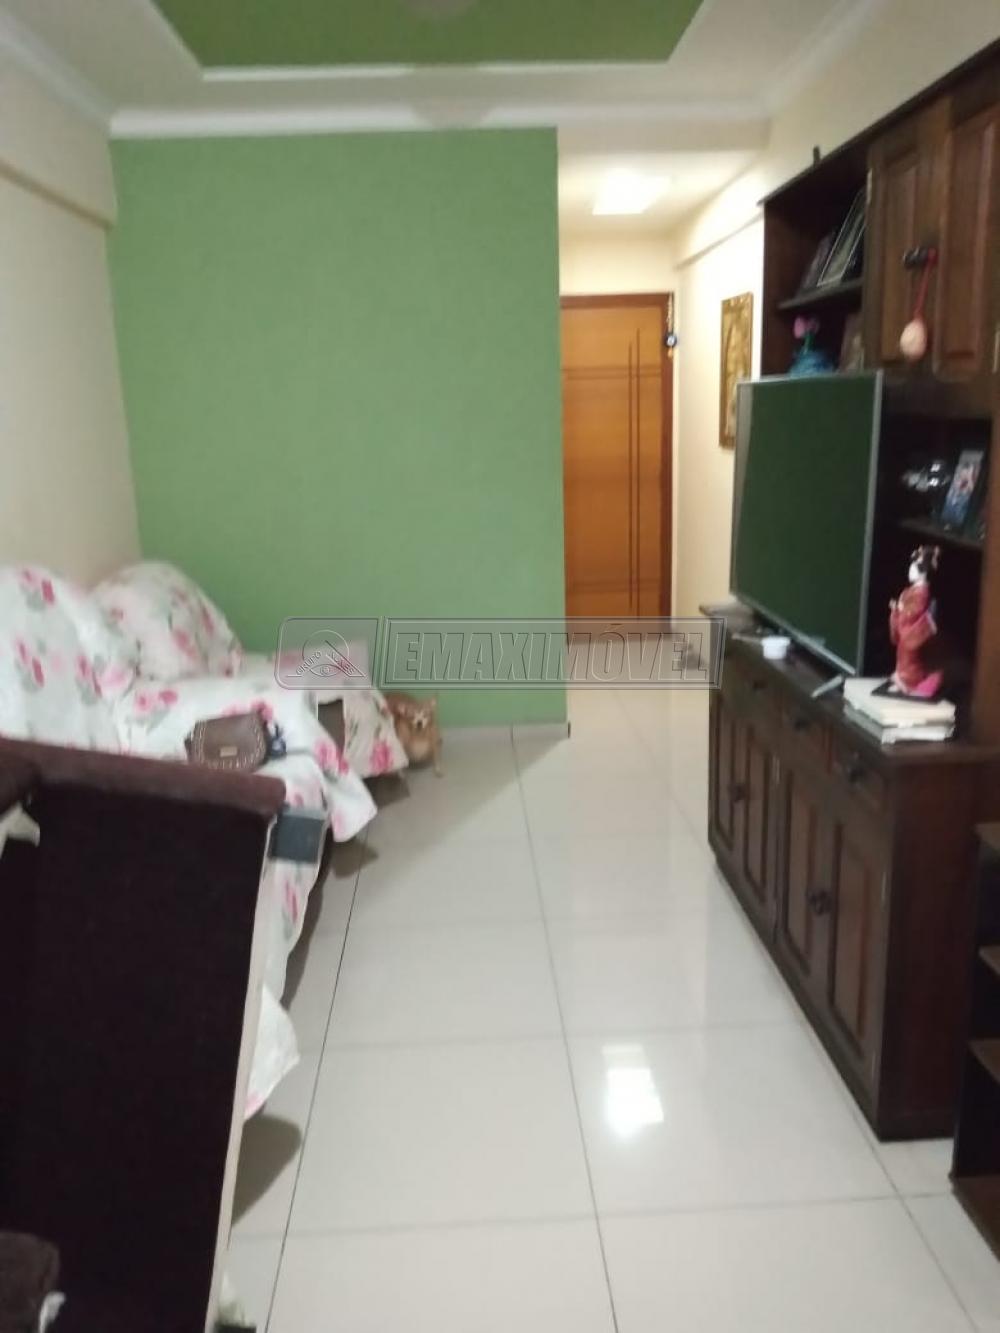 Comprar Apartamento / Padrão em Sorocaba R$ 300.000,00 - Foto 3